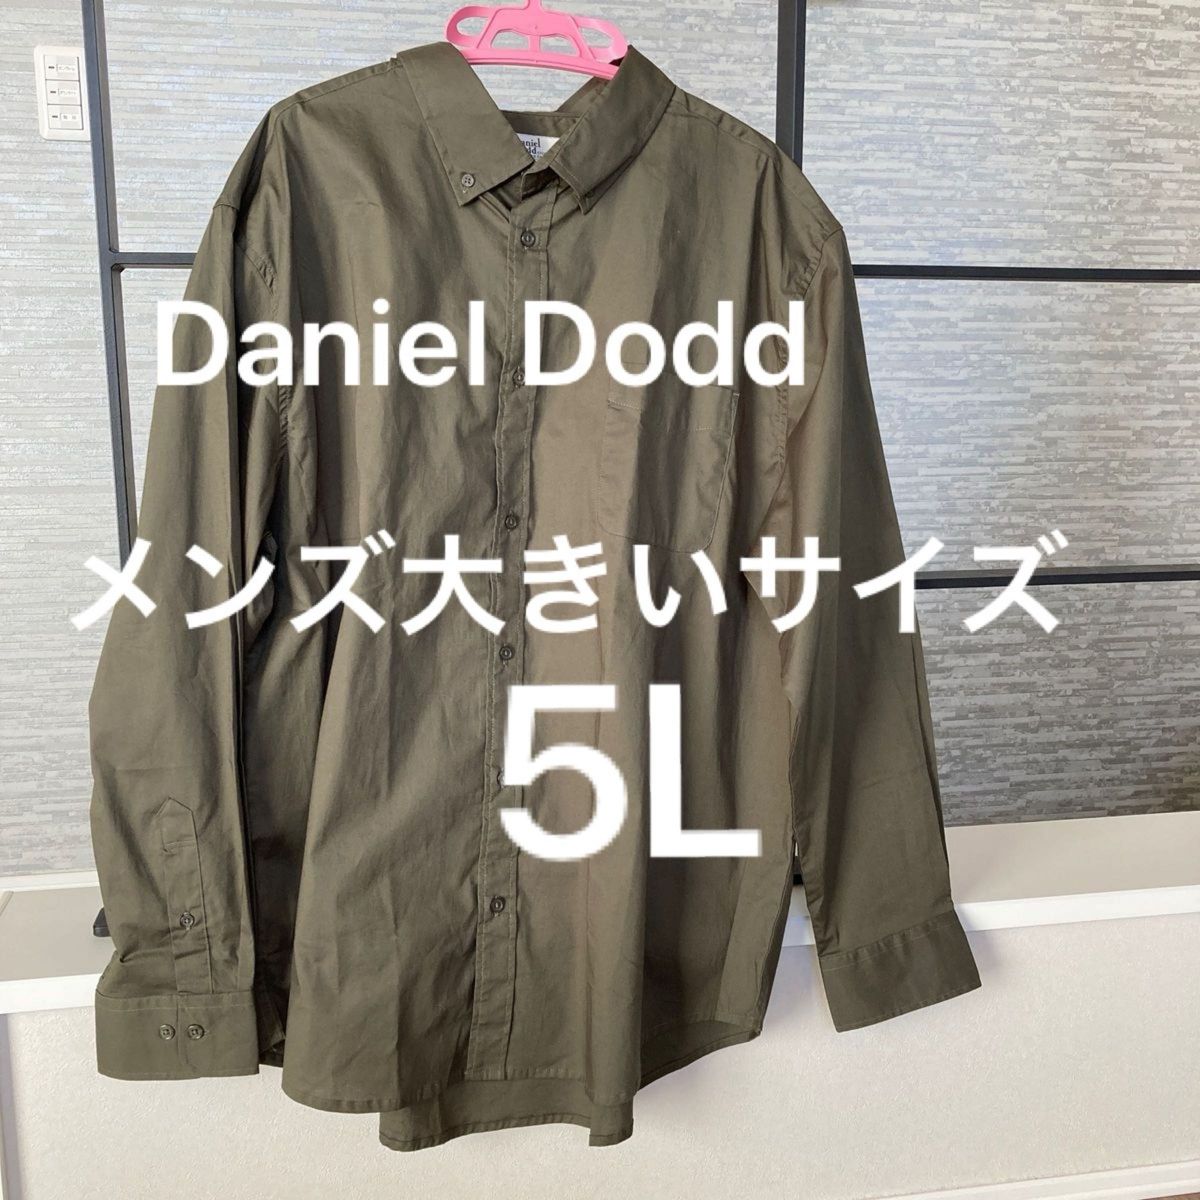 Daniel Dodd メンズ大きいサイズ 5L 長袖シャツ カーキ 無地